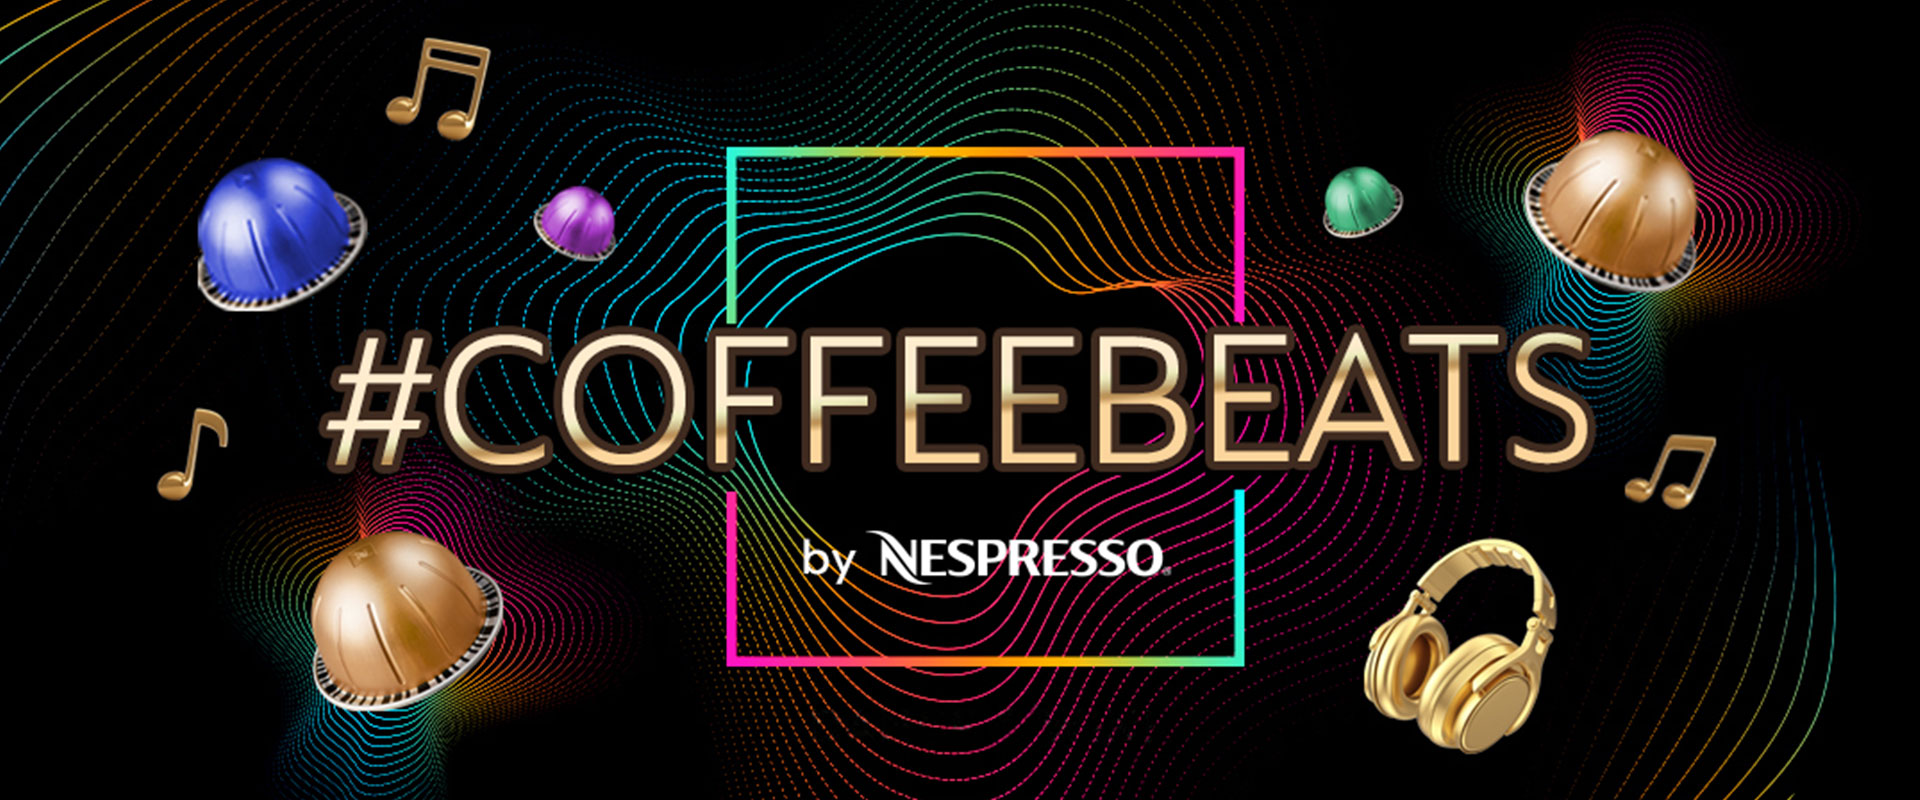 #CoffeeBeats, Nespresso